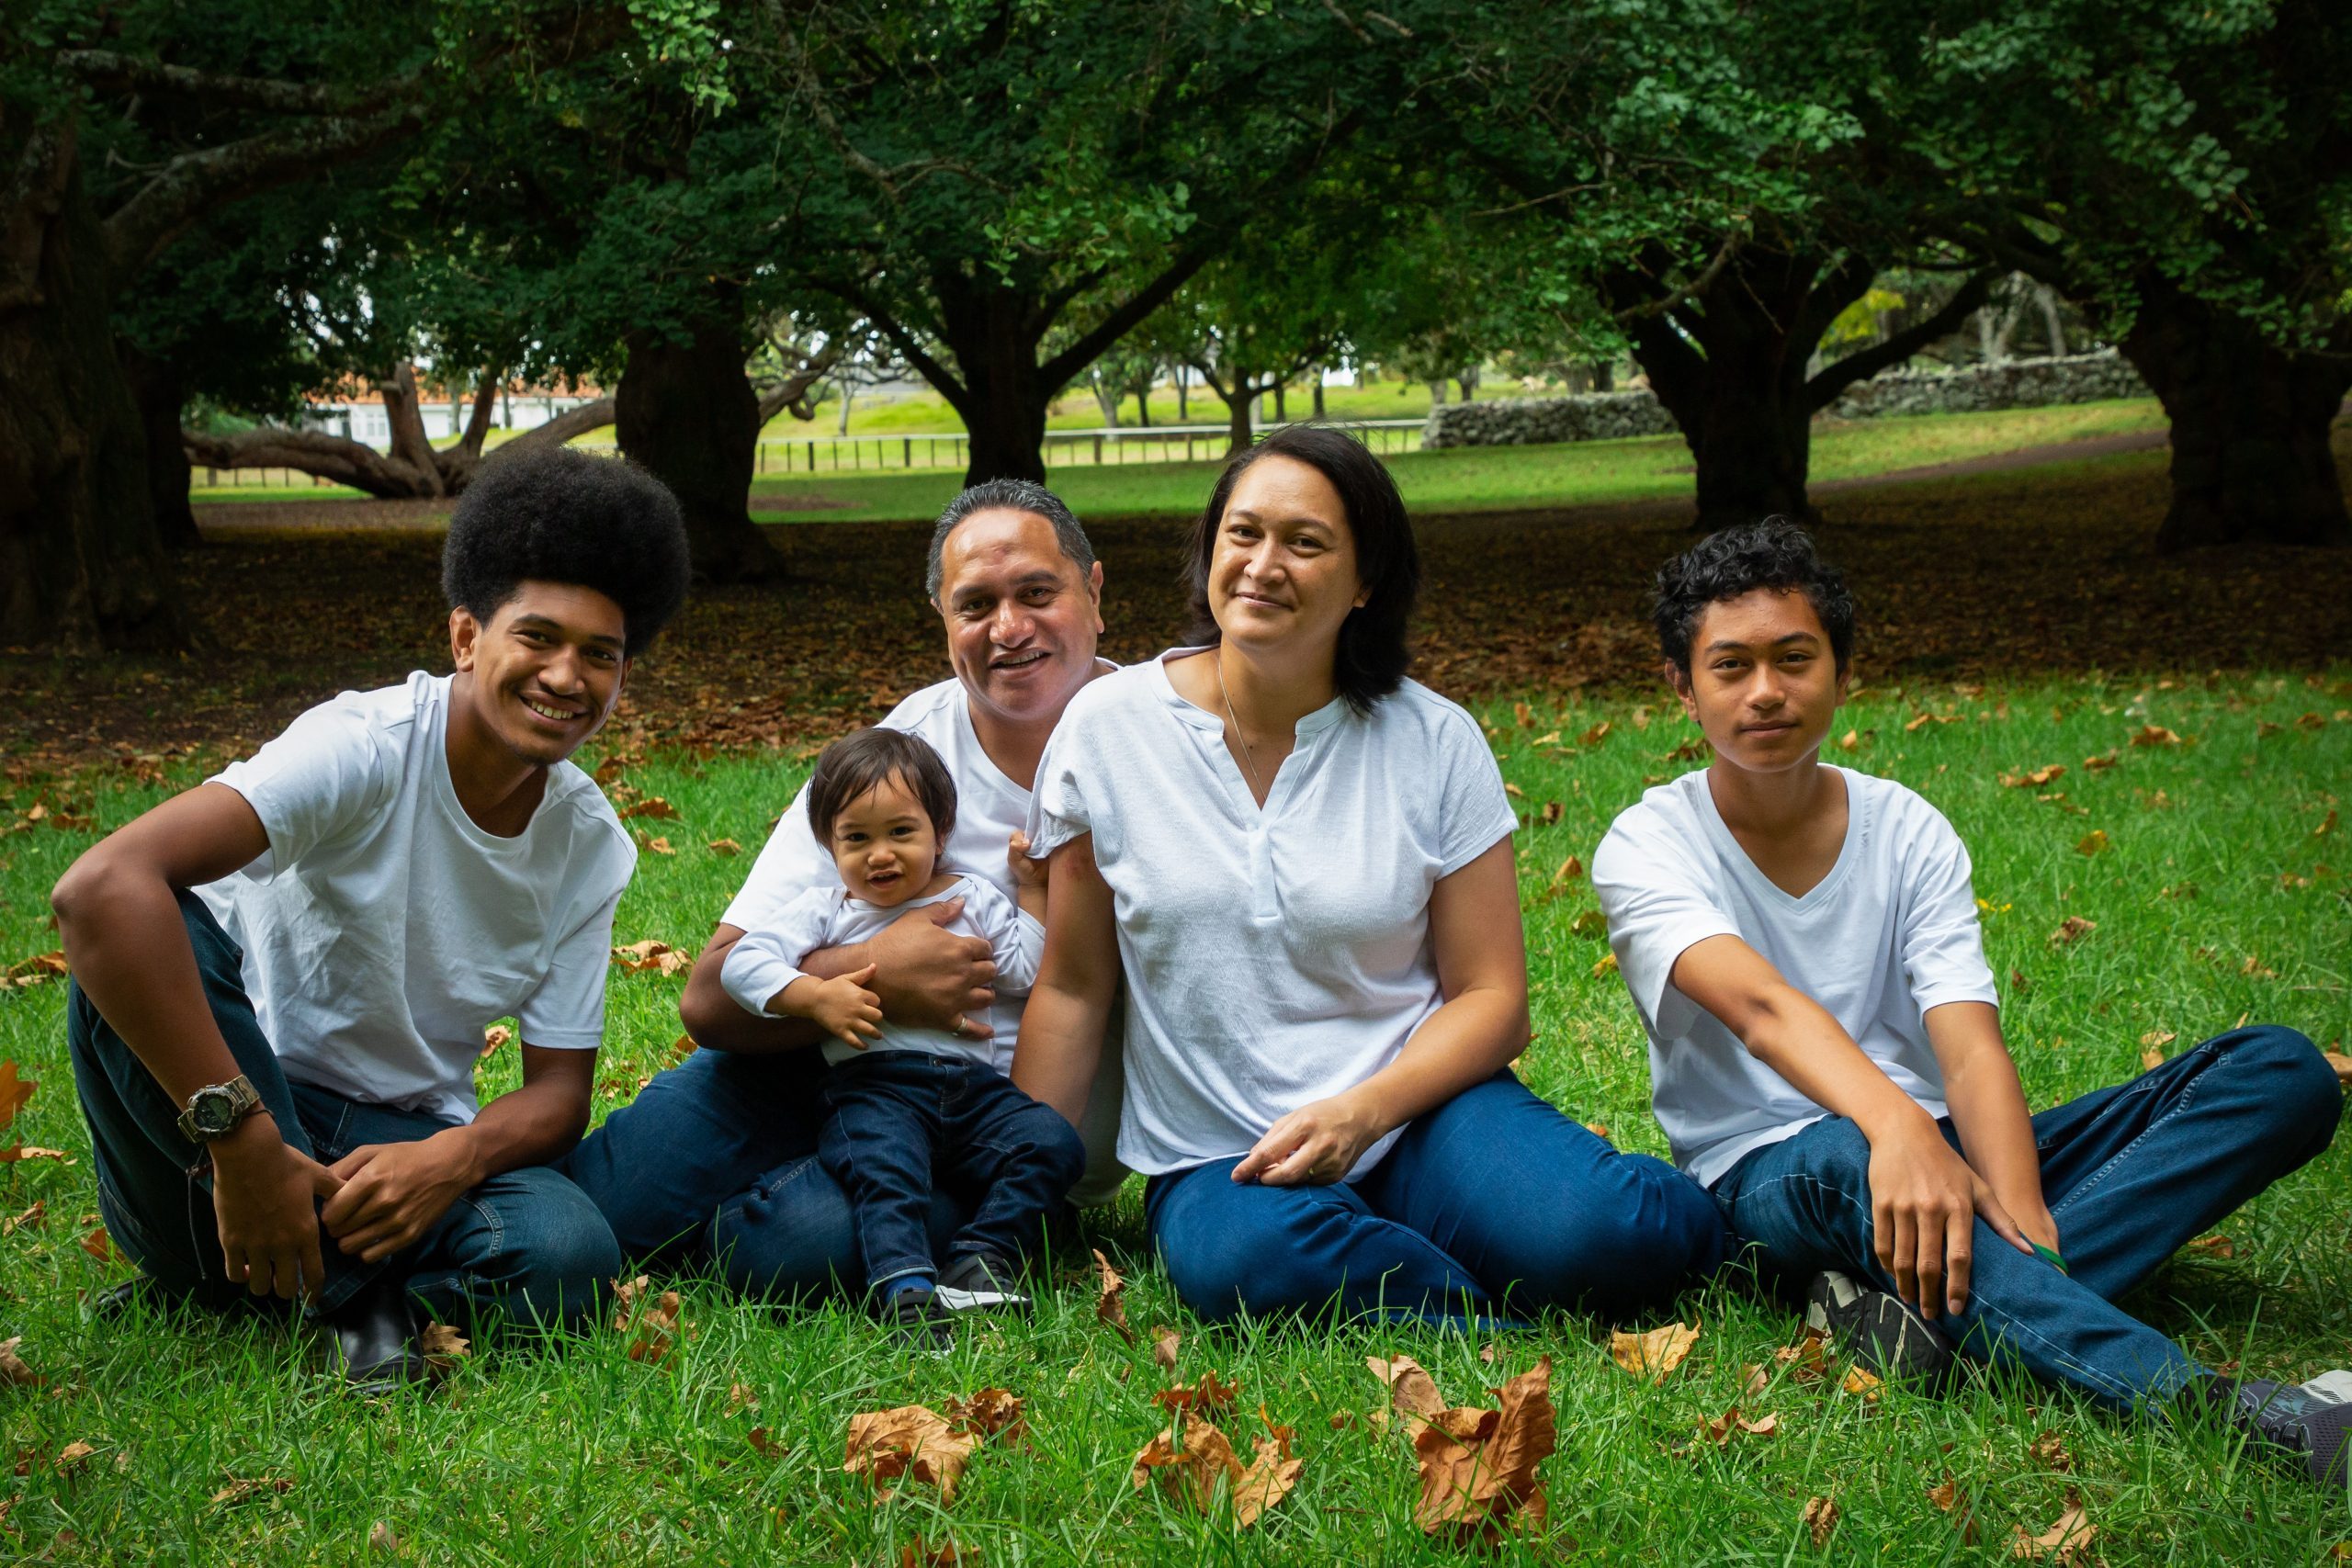 Teariki and his wife Dr Matatoa Daniel with the children - Tapira, Joshua and Tobias.